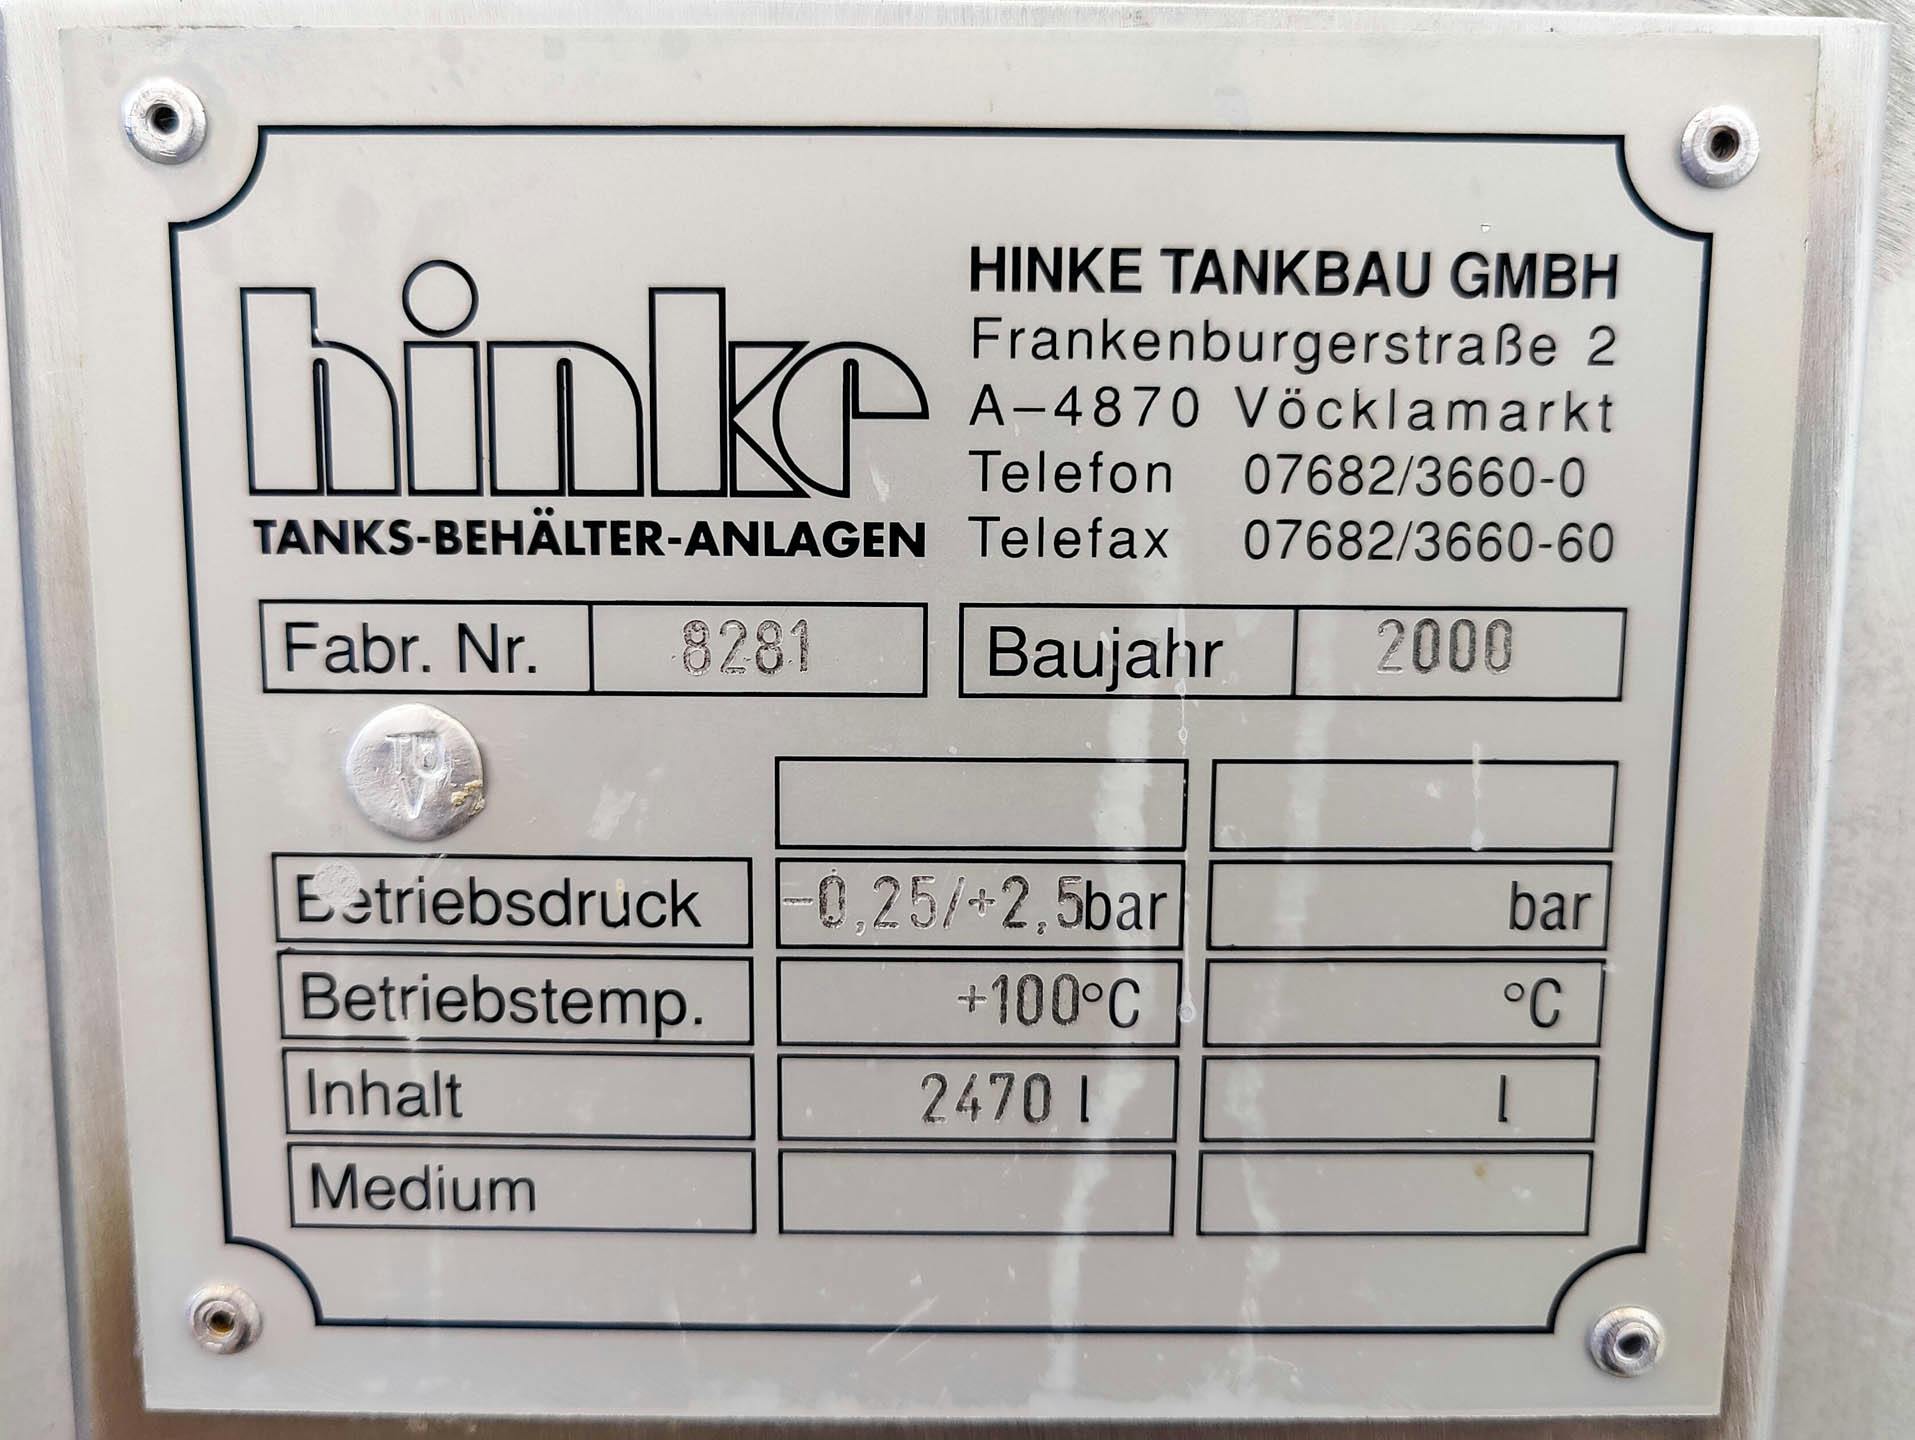 Hinke 5590 Ltr. - Drukketel - image 10